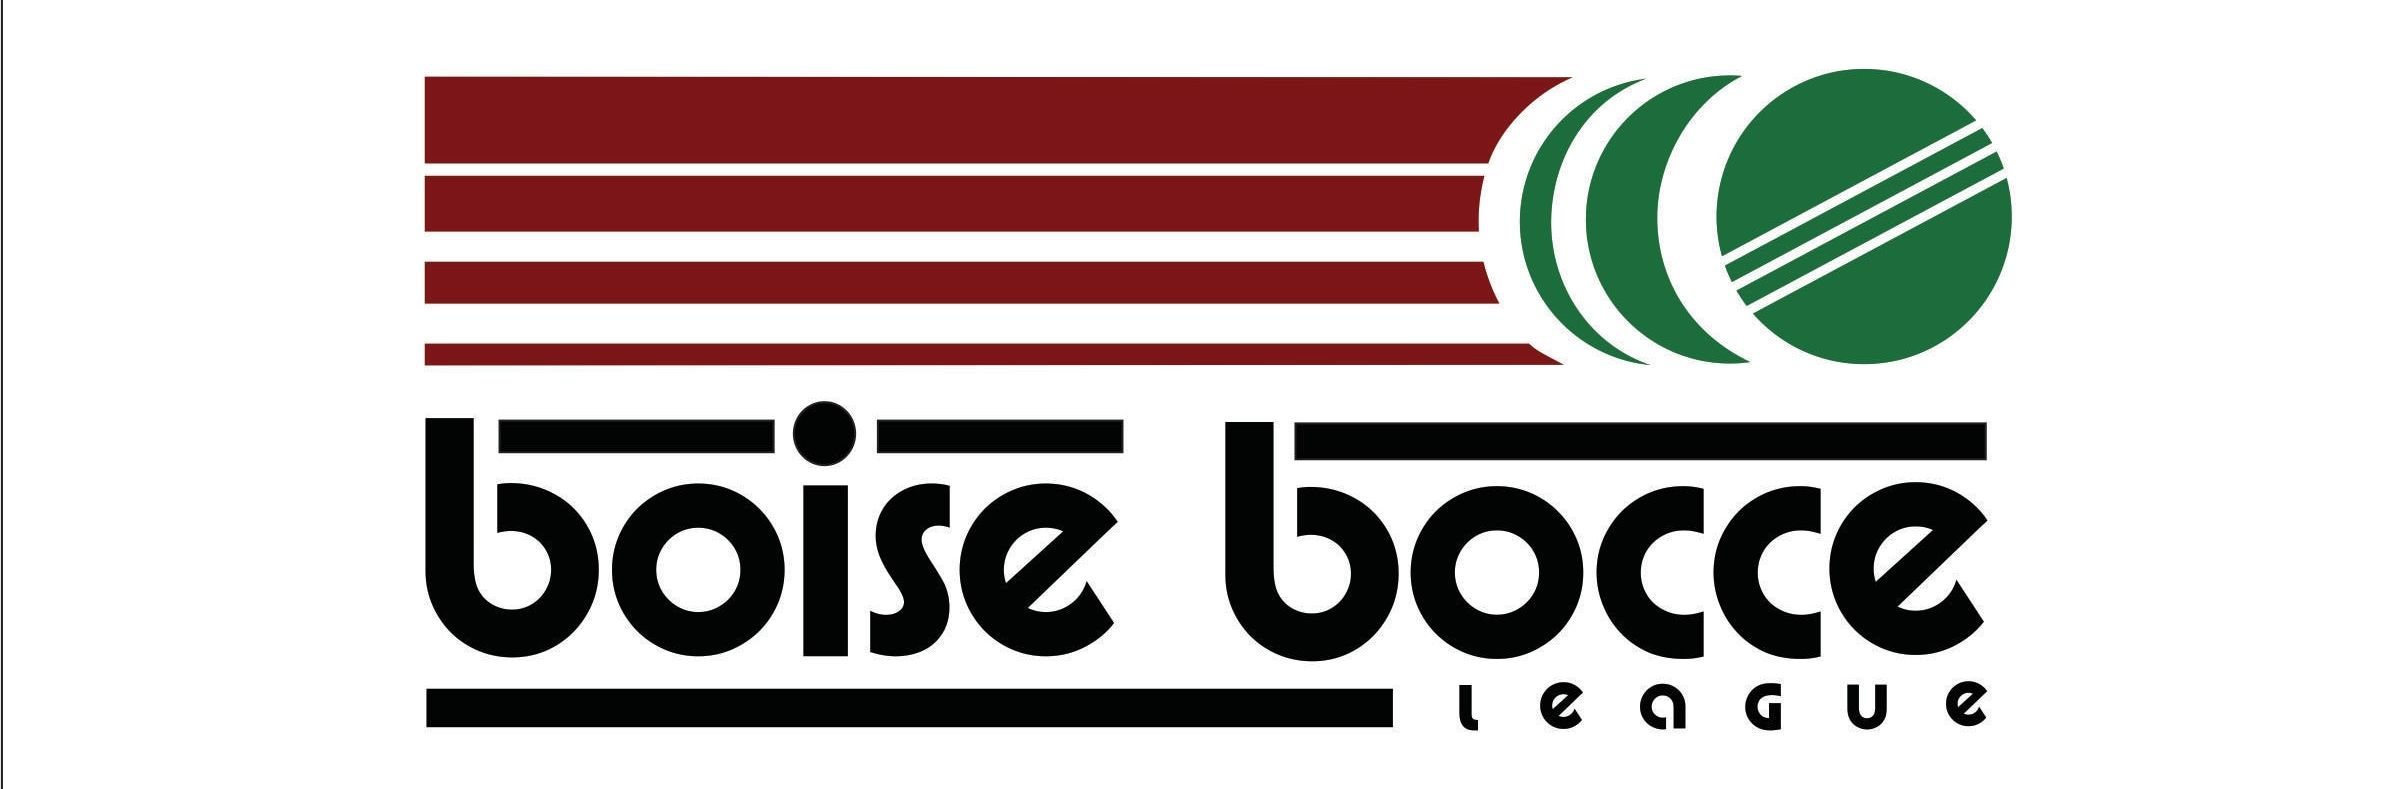 ITALIAN AMERICAN CLUB OF BOISE - Home